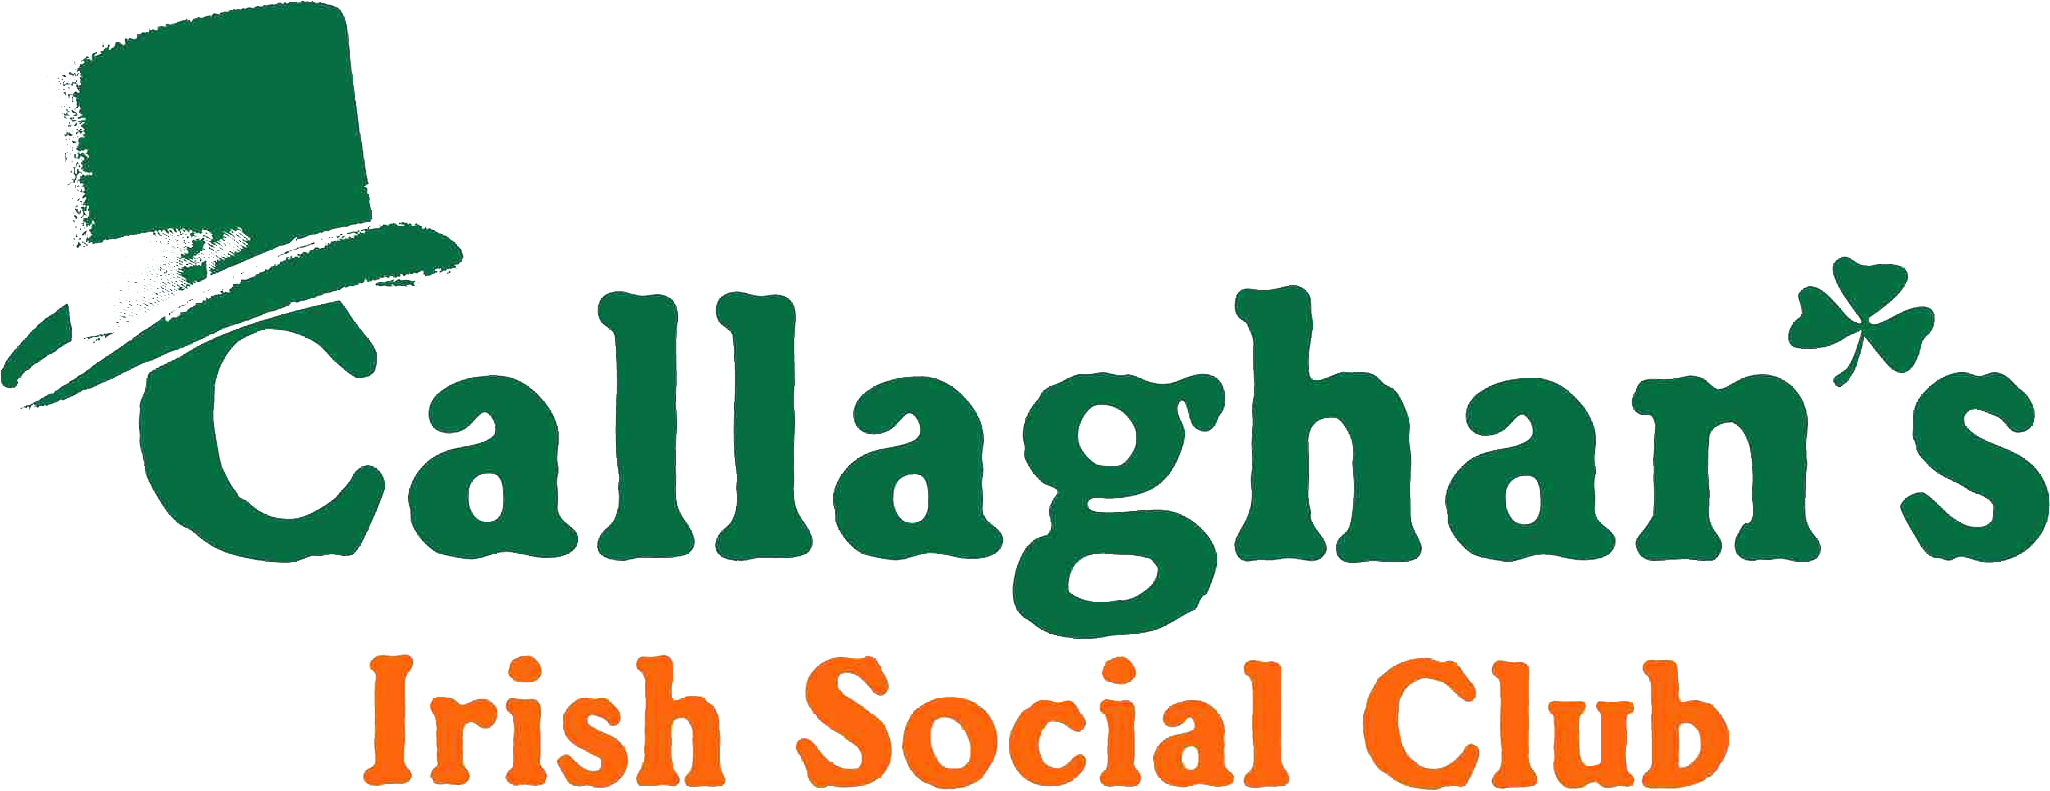 Callaghan’s Irish Social Club